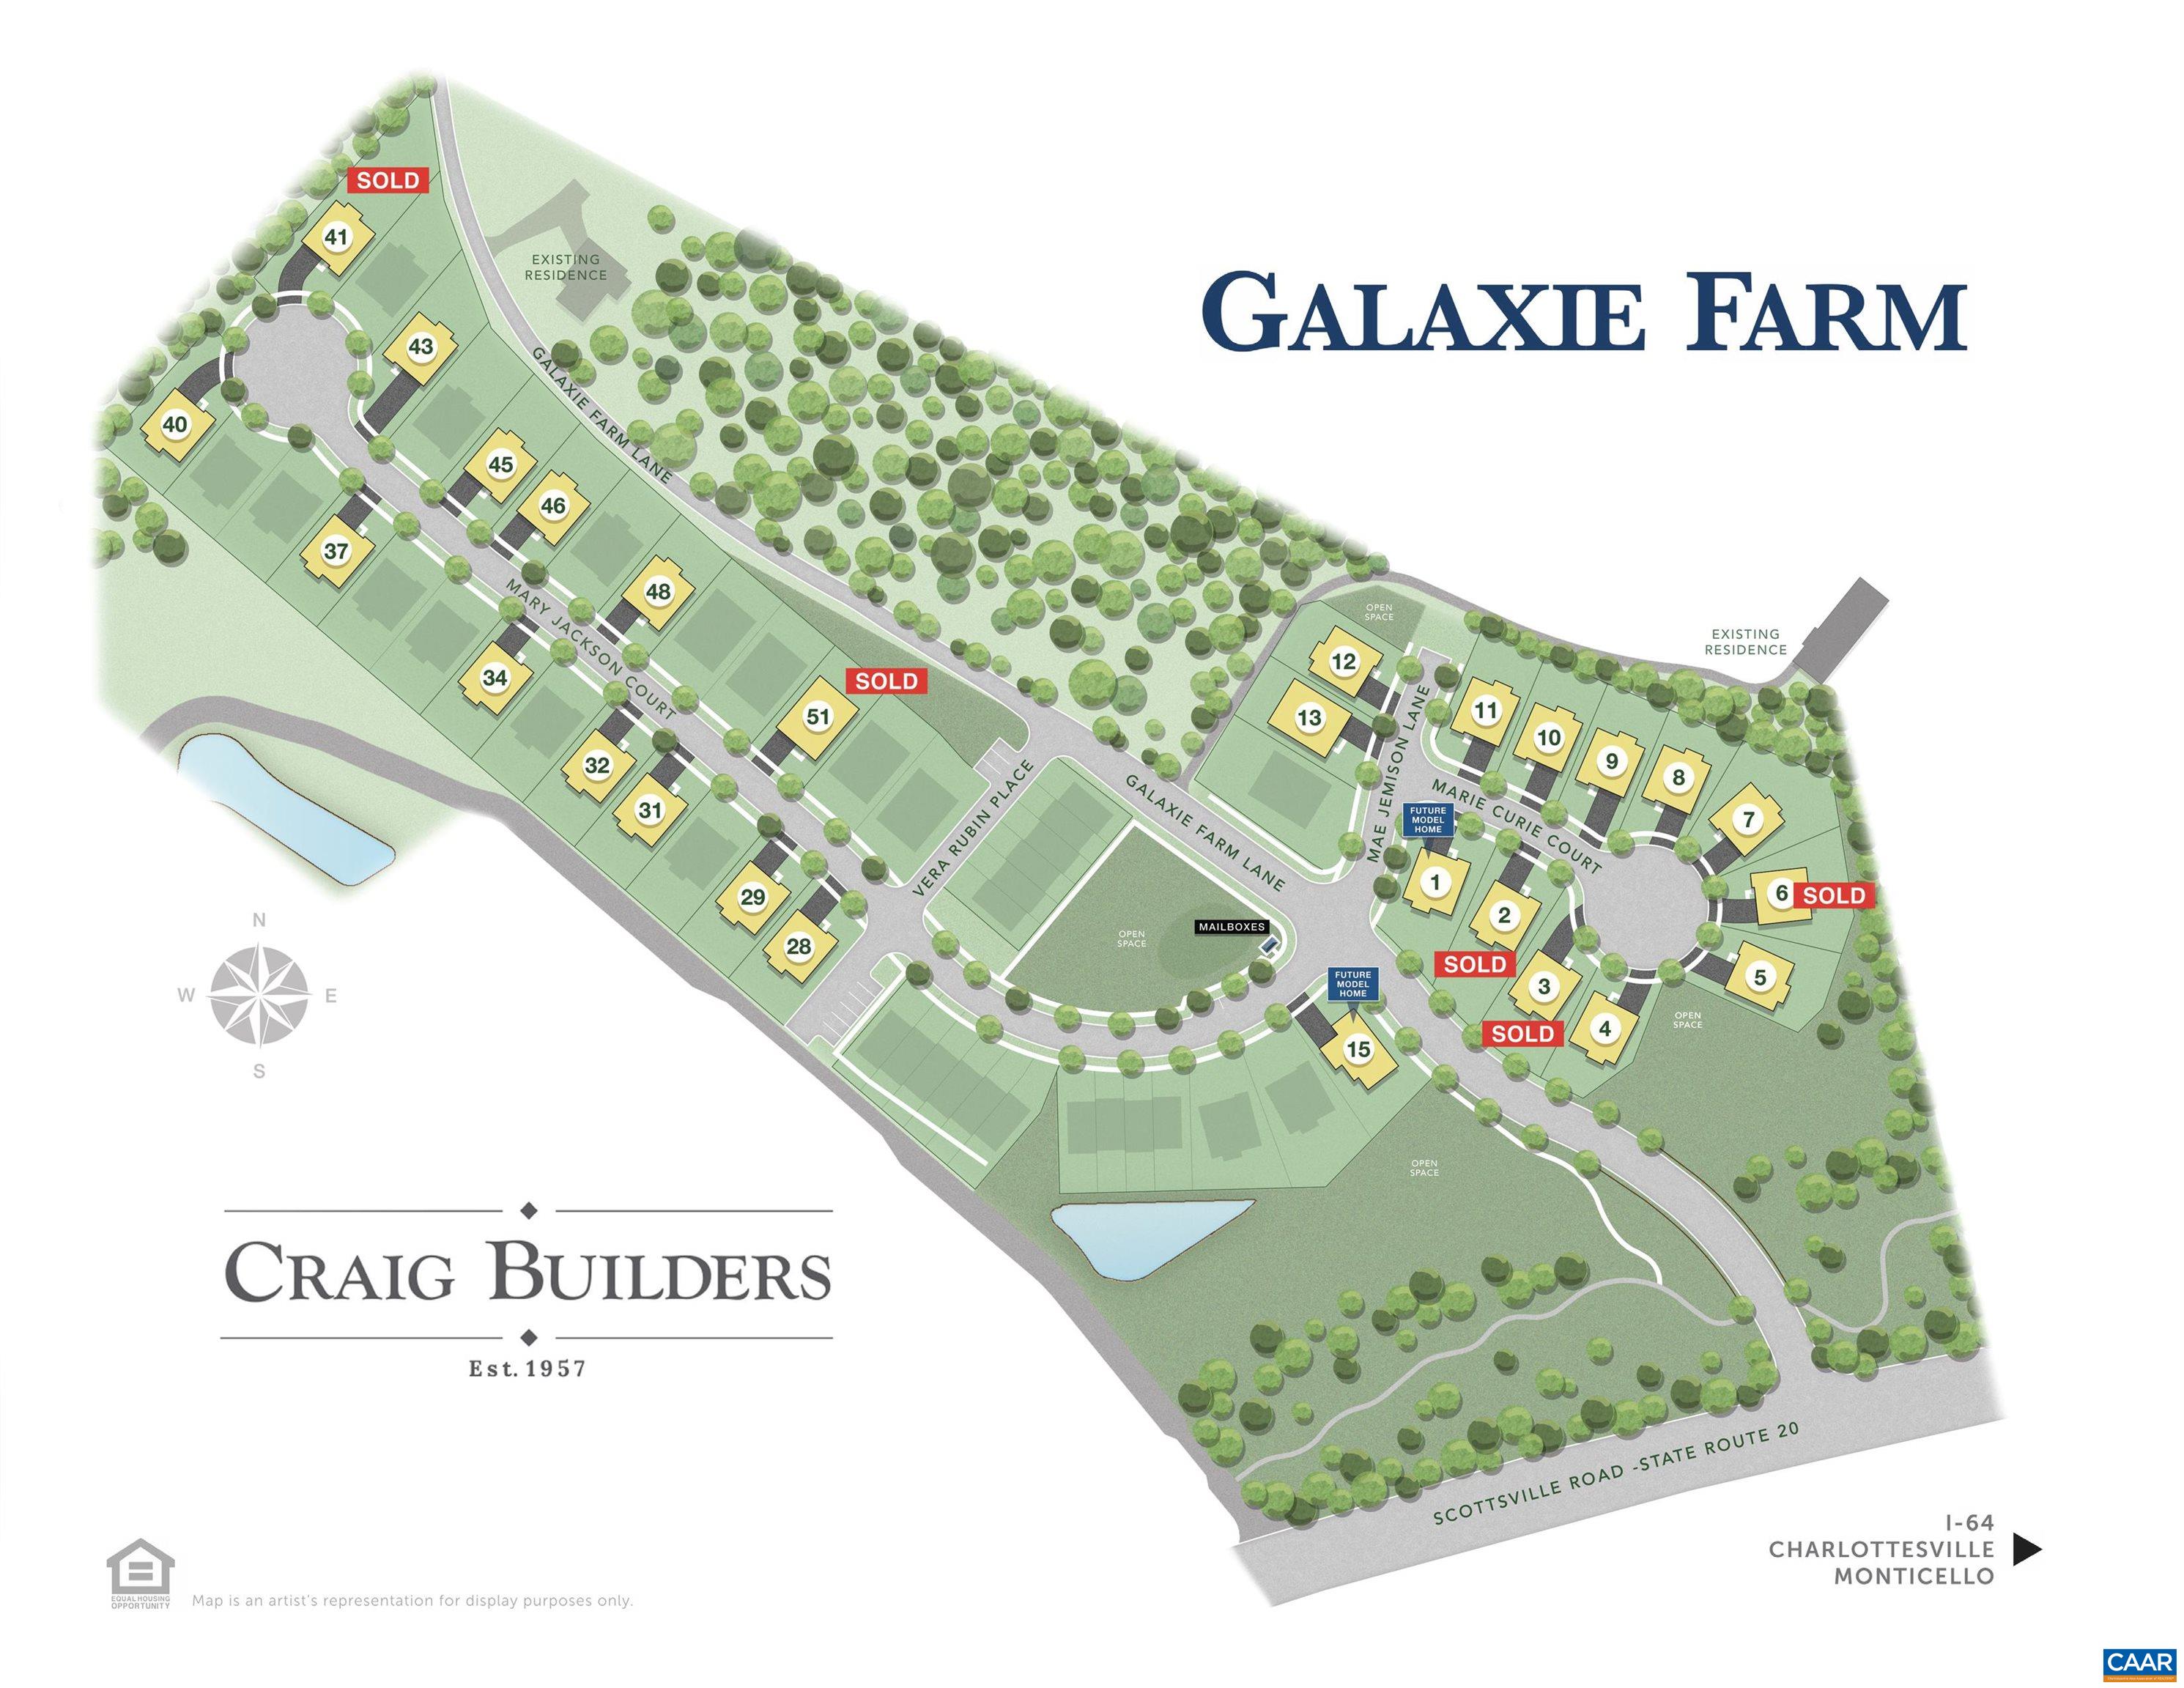 Craig Builders home in Galaxie Farm